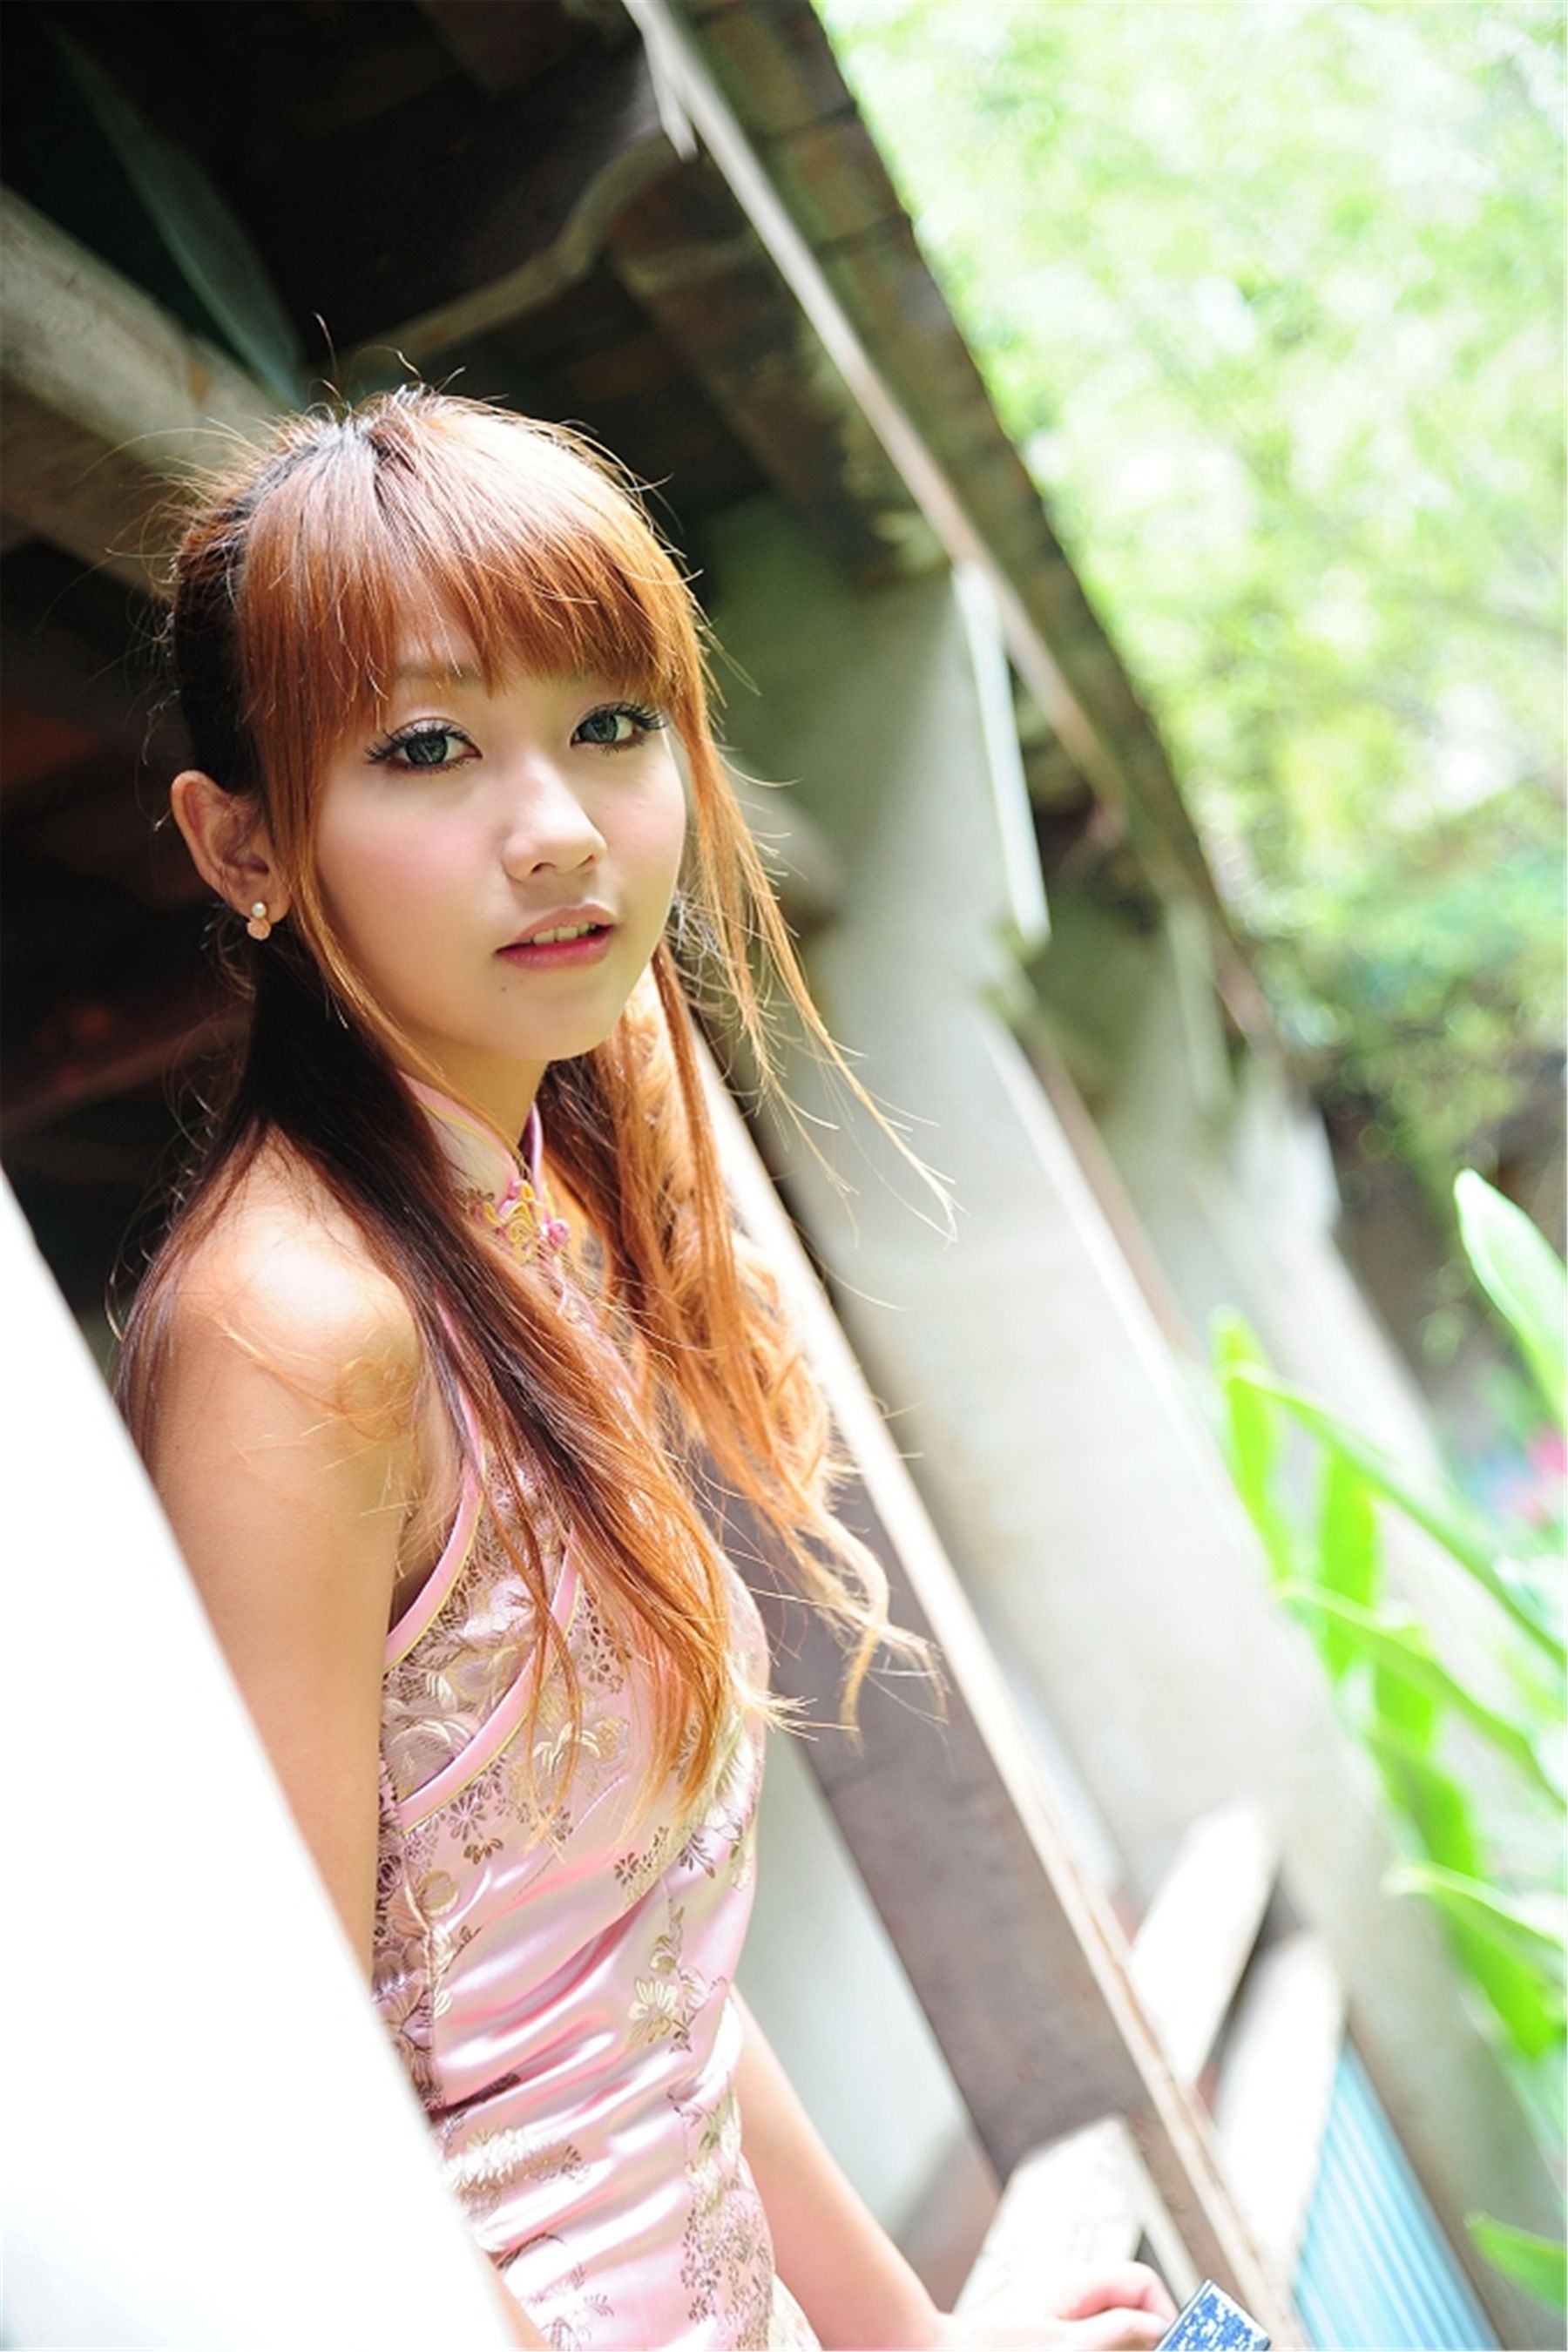 [旗袍美女] 台湾美女棠棠 - 林家花園外拍旗袍写真图片